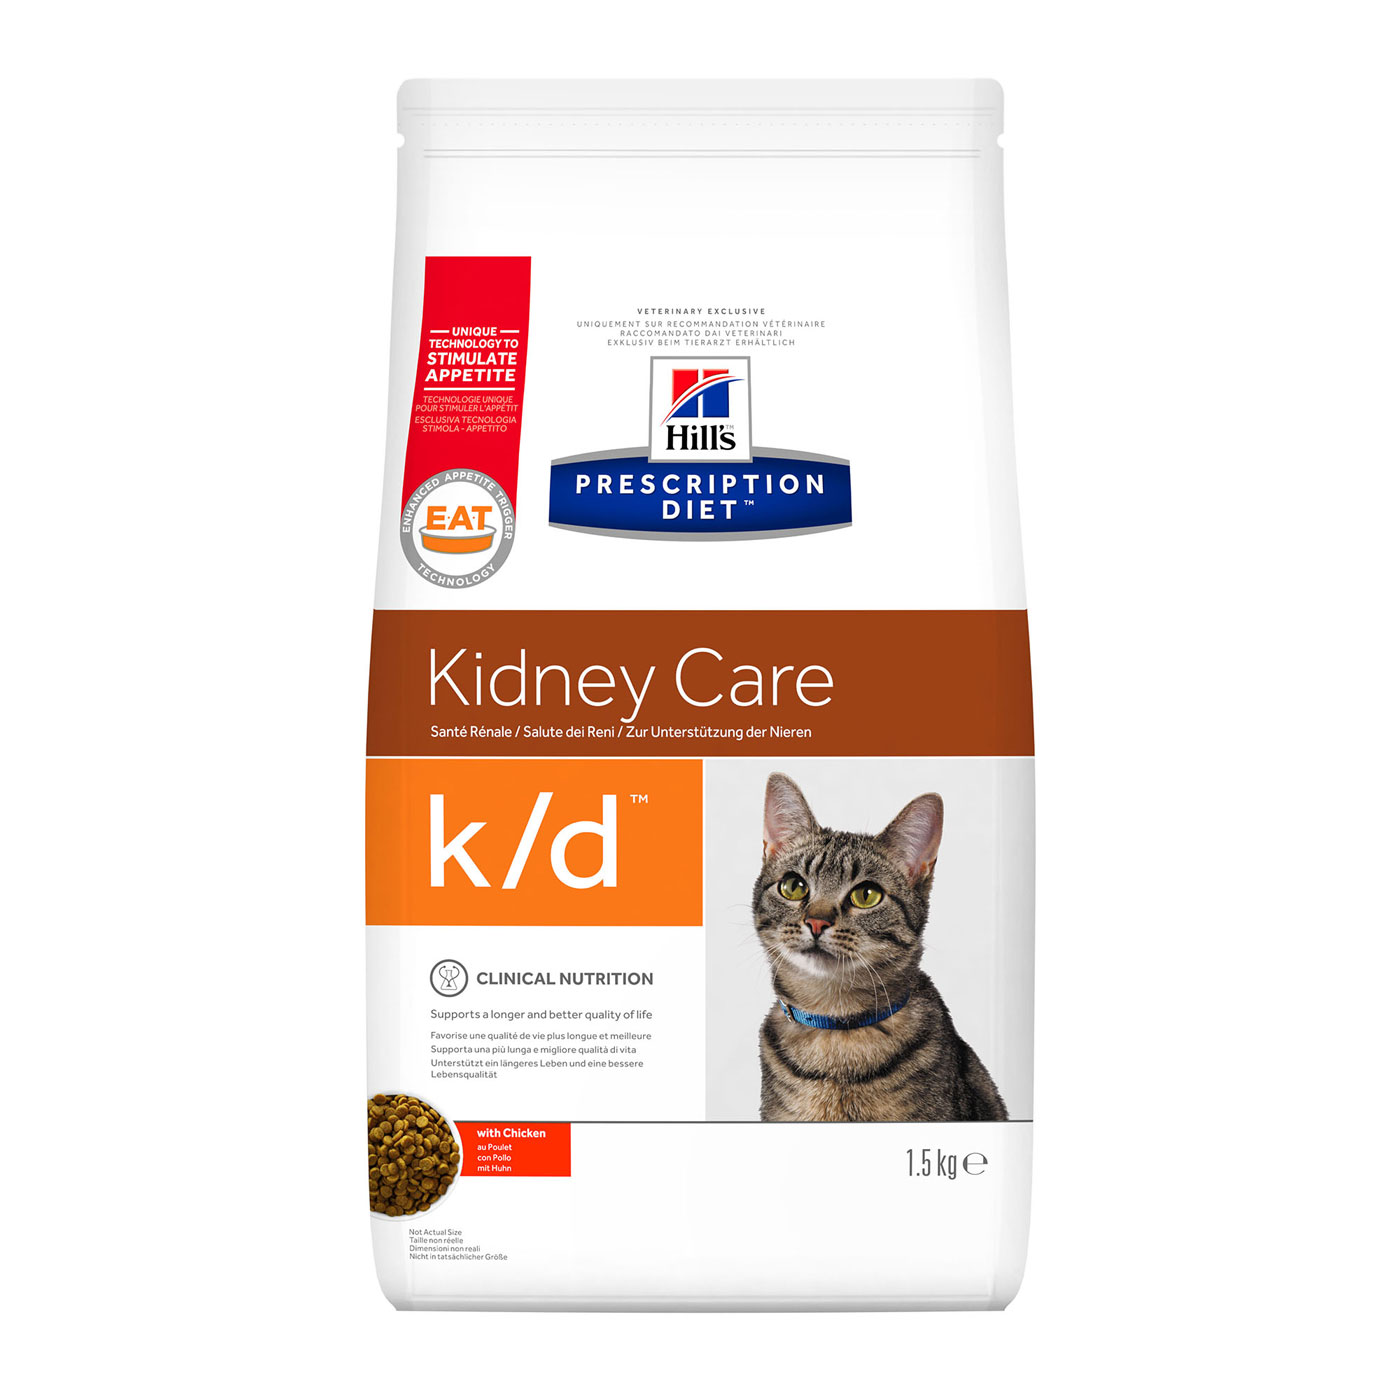  HILL'S PRESCRIPTION DIET K/D KIDNEY CARE – лечебный сухой корм для котов при заболеваниях почек 